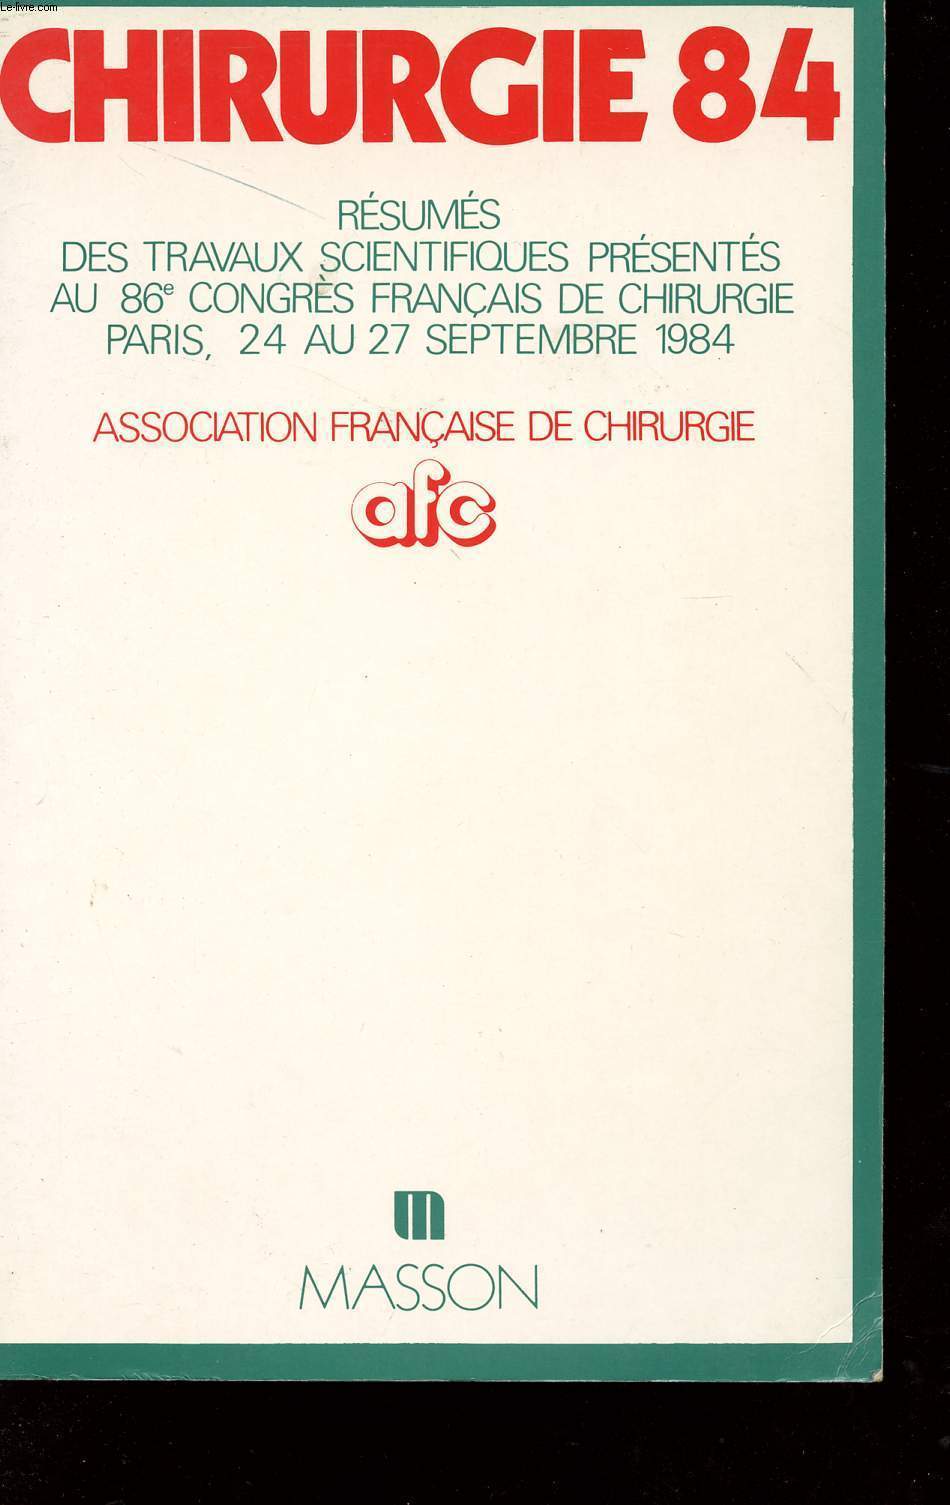 CHIRURGIE 84 - RESUMES ET TRAVAUX SCIENTIFIQUES PRESENTES AU 86 CONGRES FRANCAIS DE CHIRURGIE - PARIS - 24 AU 27 SEPTEMBRE 1984.